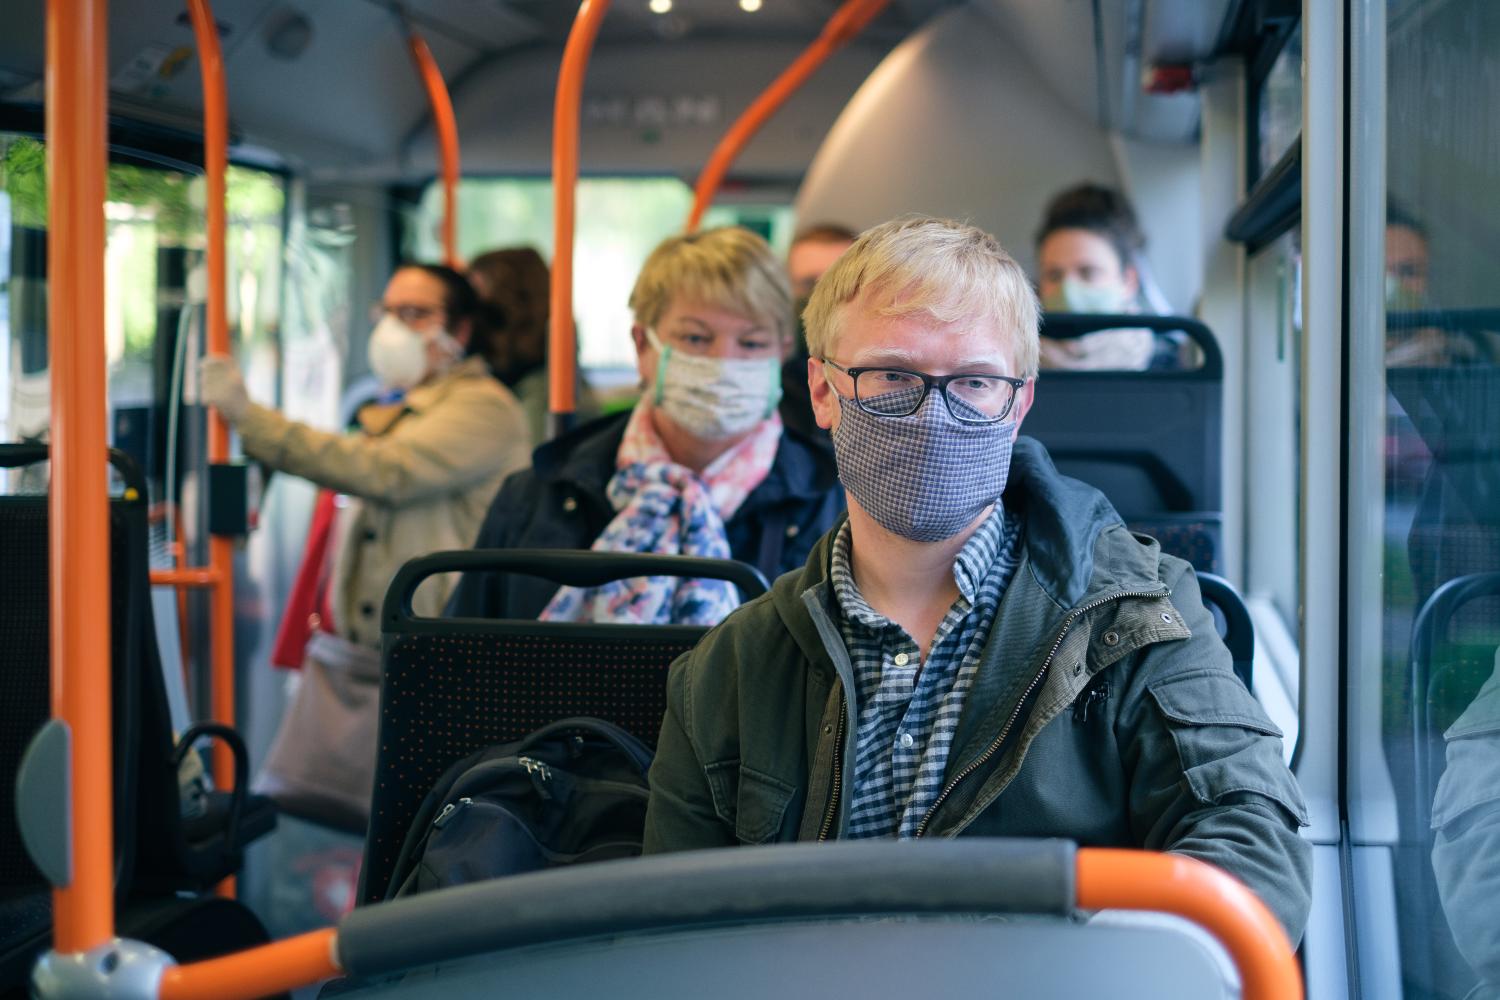 24 часа в автобусе. Люди в автобусе. Люди в масках в автобусе. Маски в общественном транспорте. D общественнv транспорт.